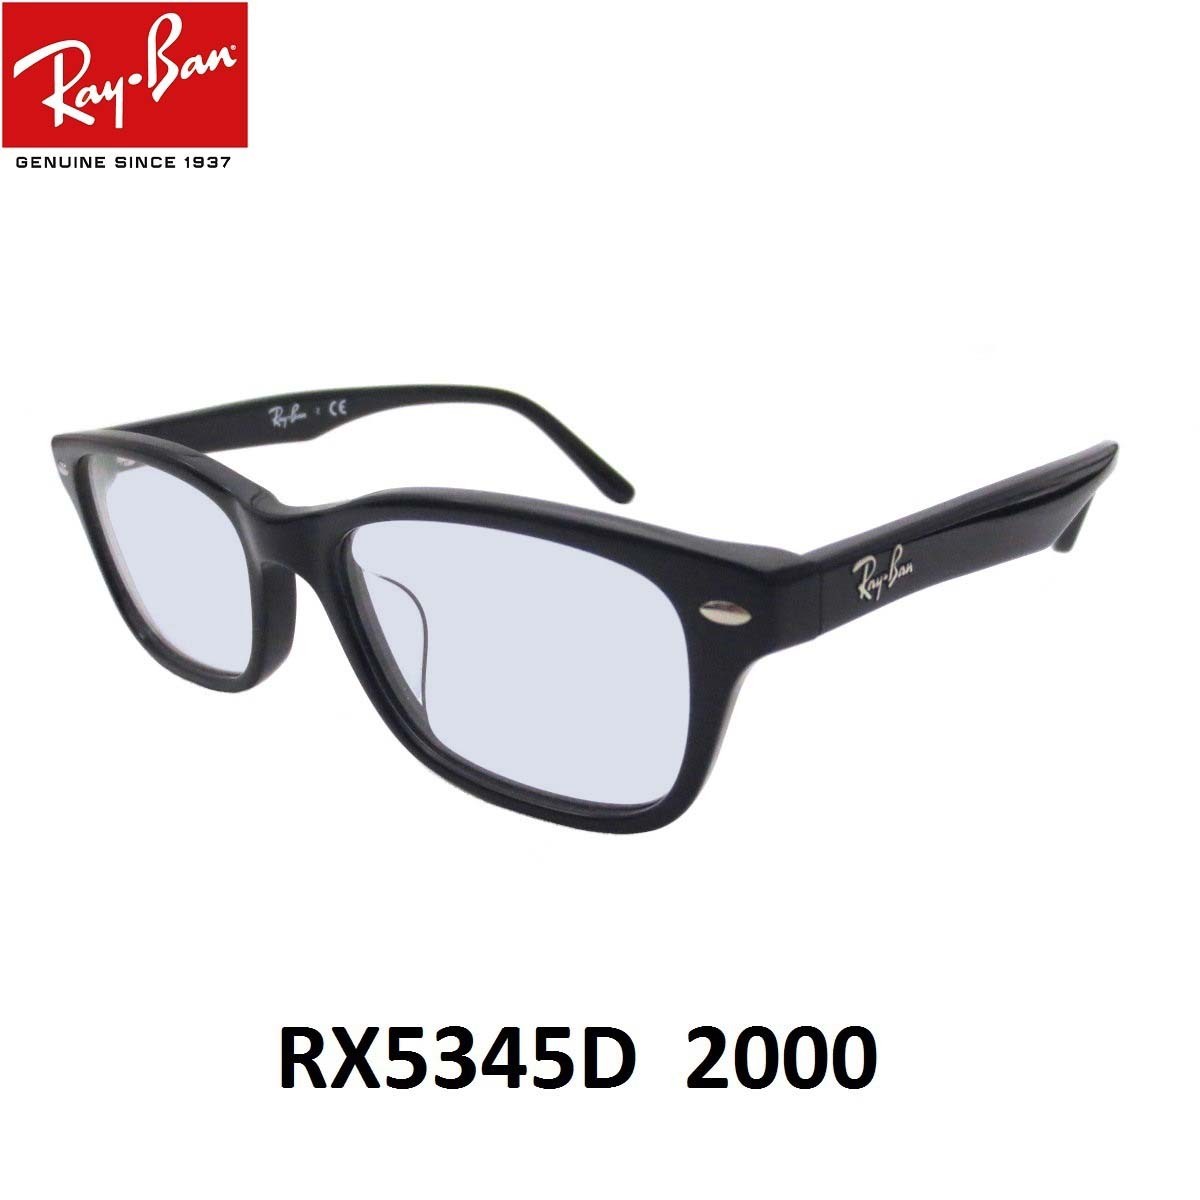 レイバン ライトカラー サングラス Ray-Ban RX5345D-2000 53 アジアンフィット セルフレーム UVカット